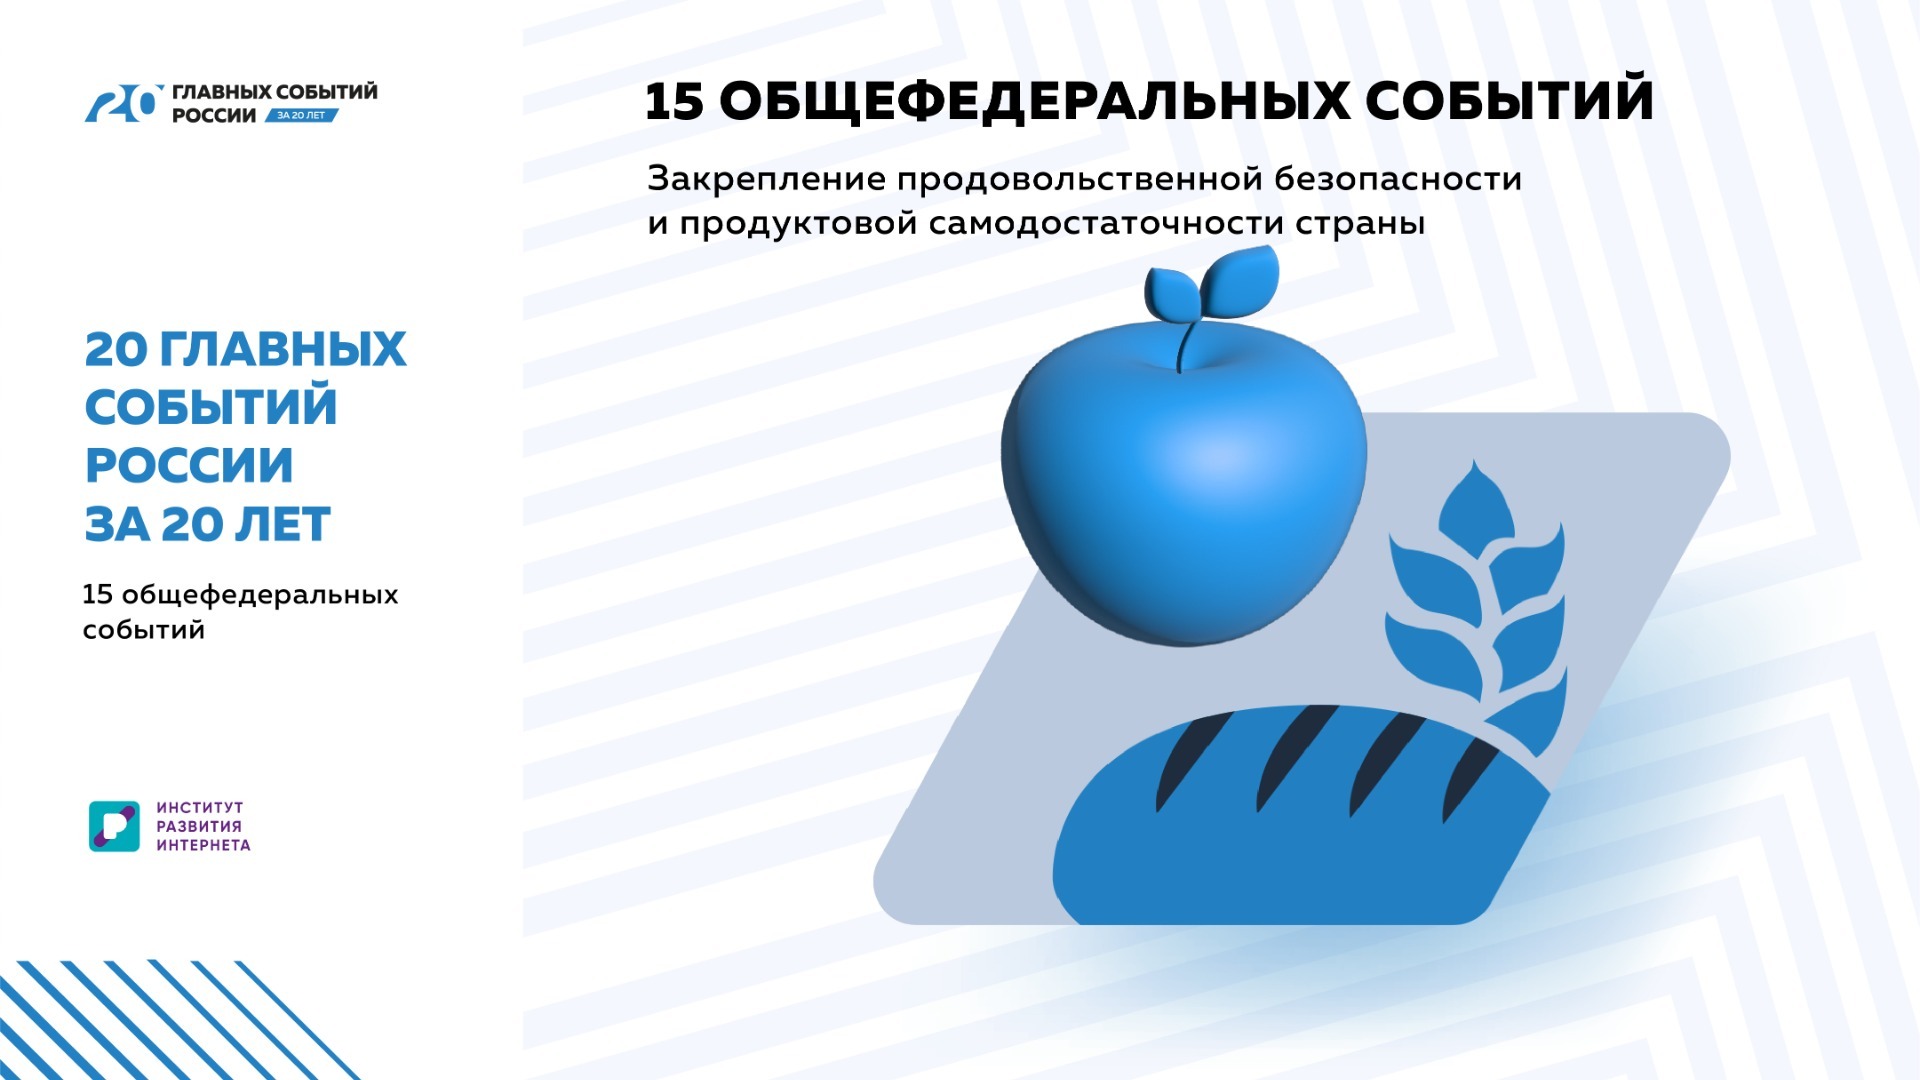 «20 главных событий России за 20 лет»: Продовольственная безопасность